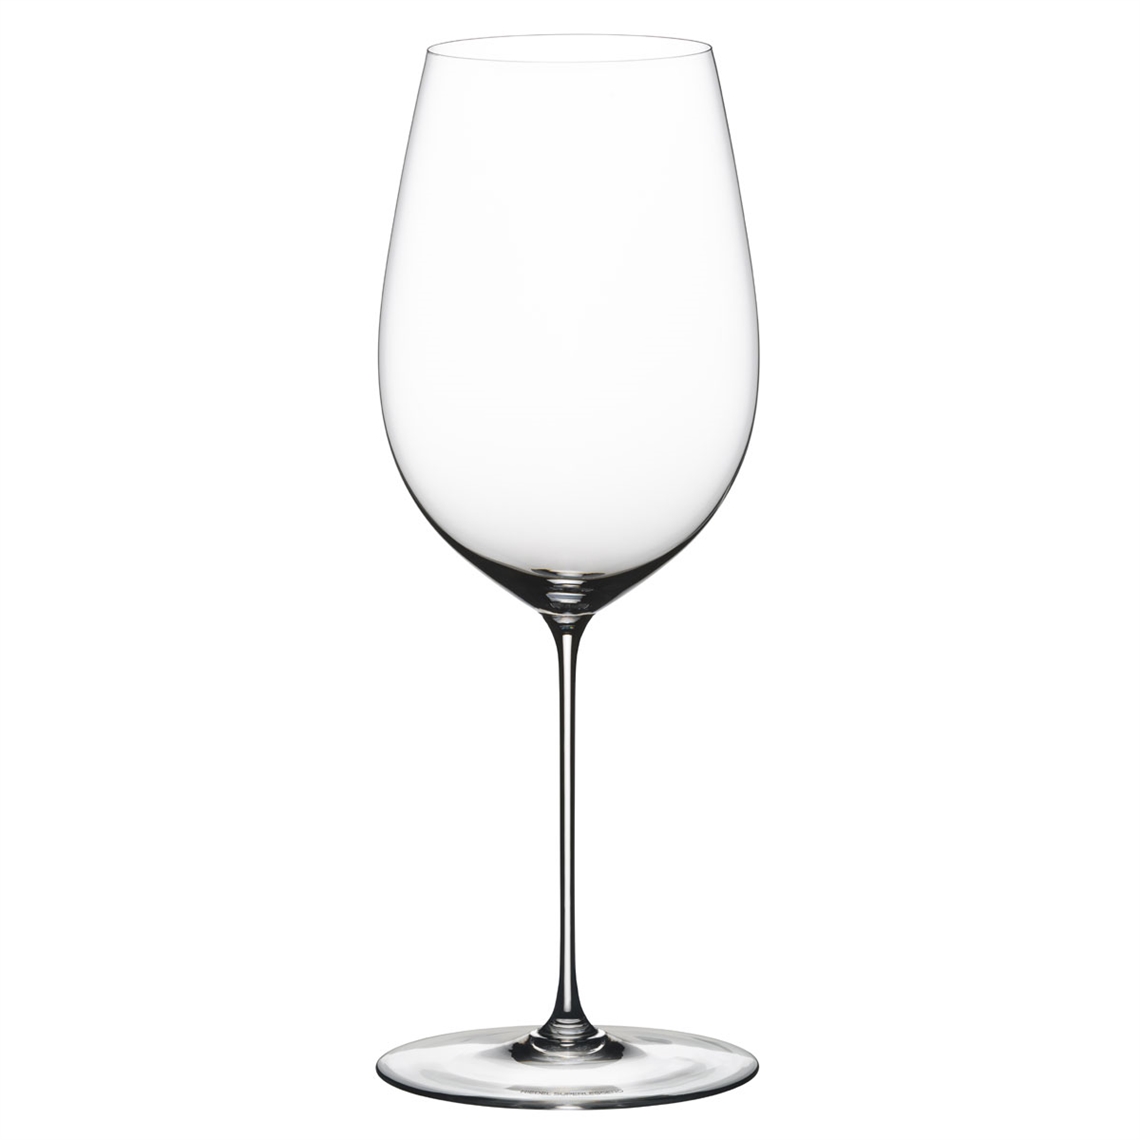 Riedel Superleggero Bordeaux Grand Cru Glass - 6425/00